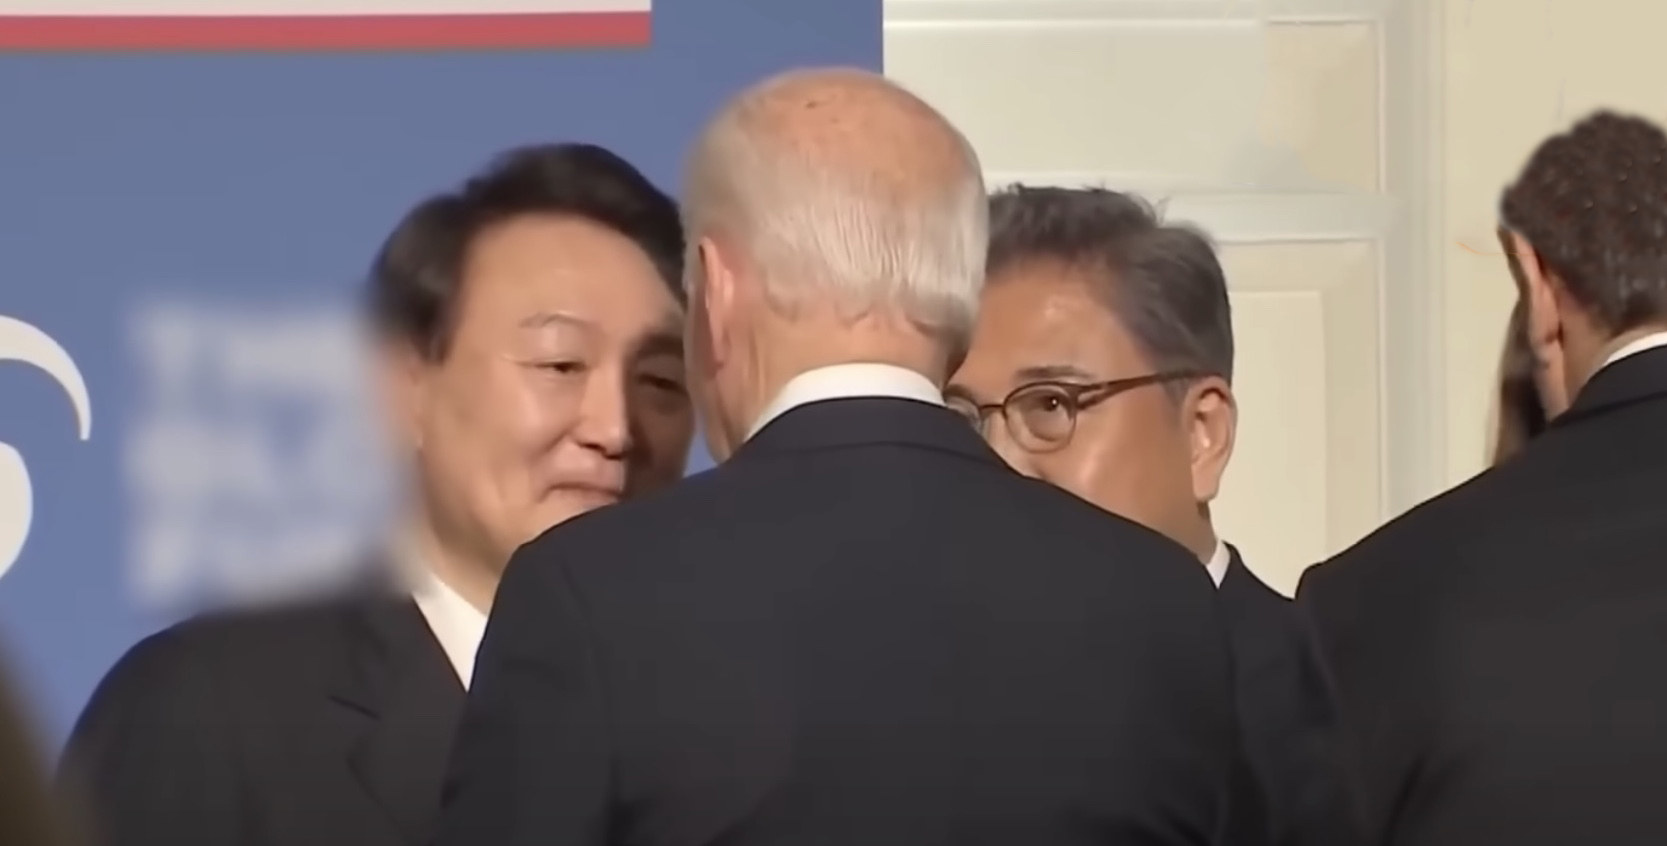 【炎上】韓国大統領、やらかす… 米主催の会合でカメラに気付かず米国侮蔑発言